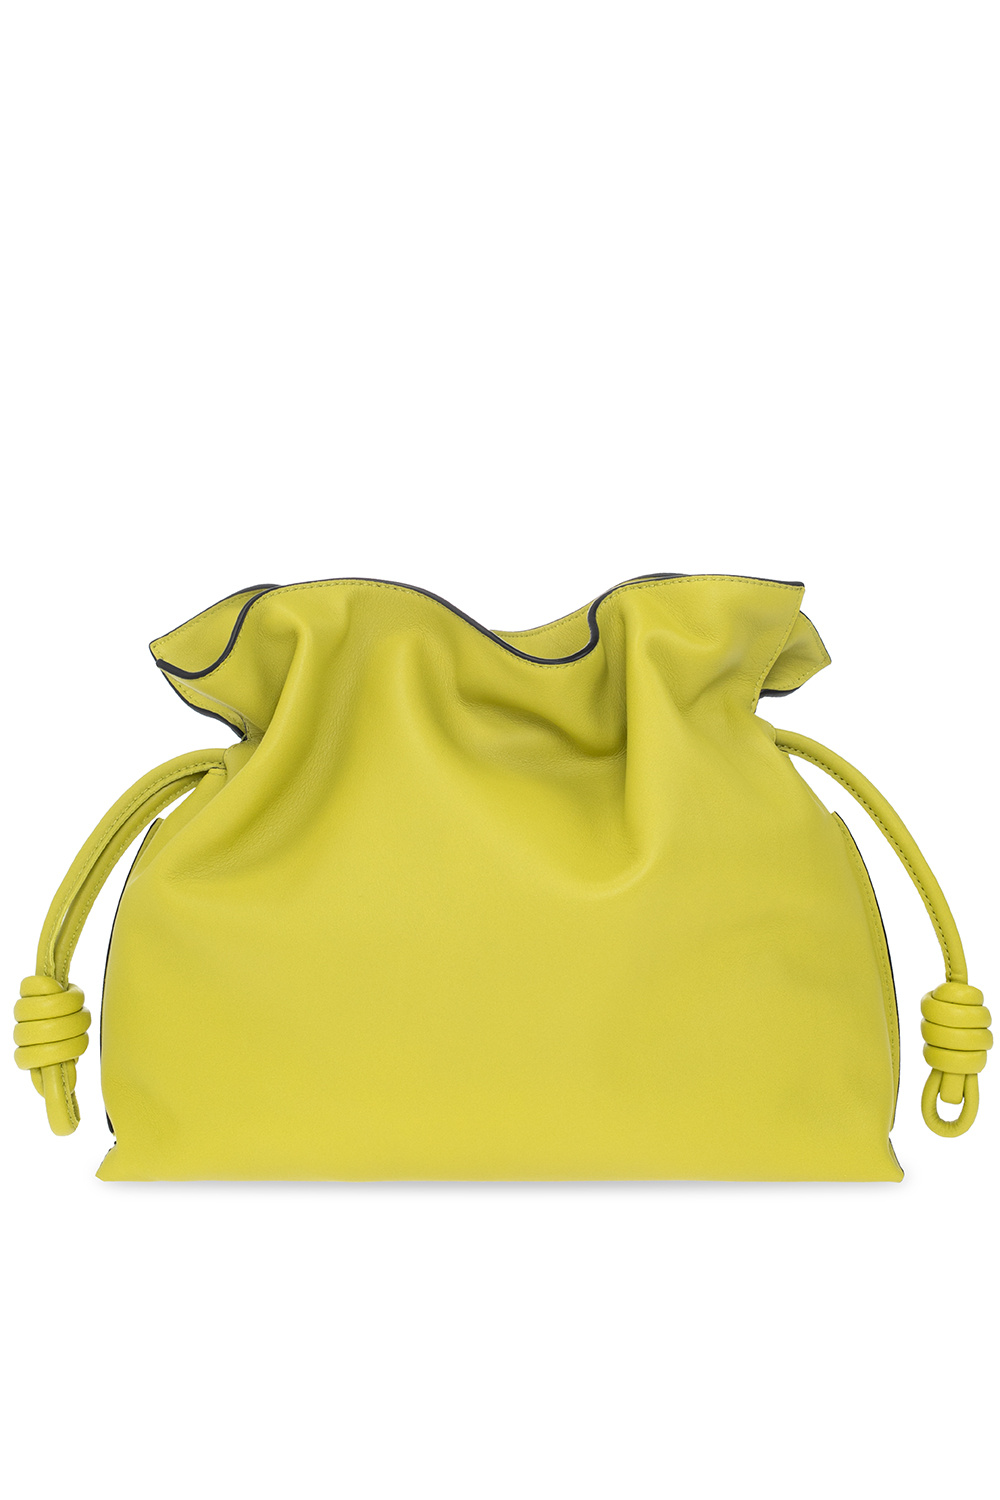 loewe Bags ‘Flamenco’ shoulder bag